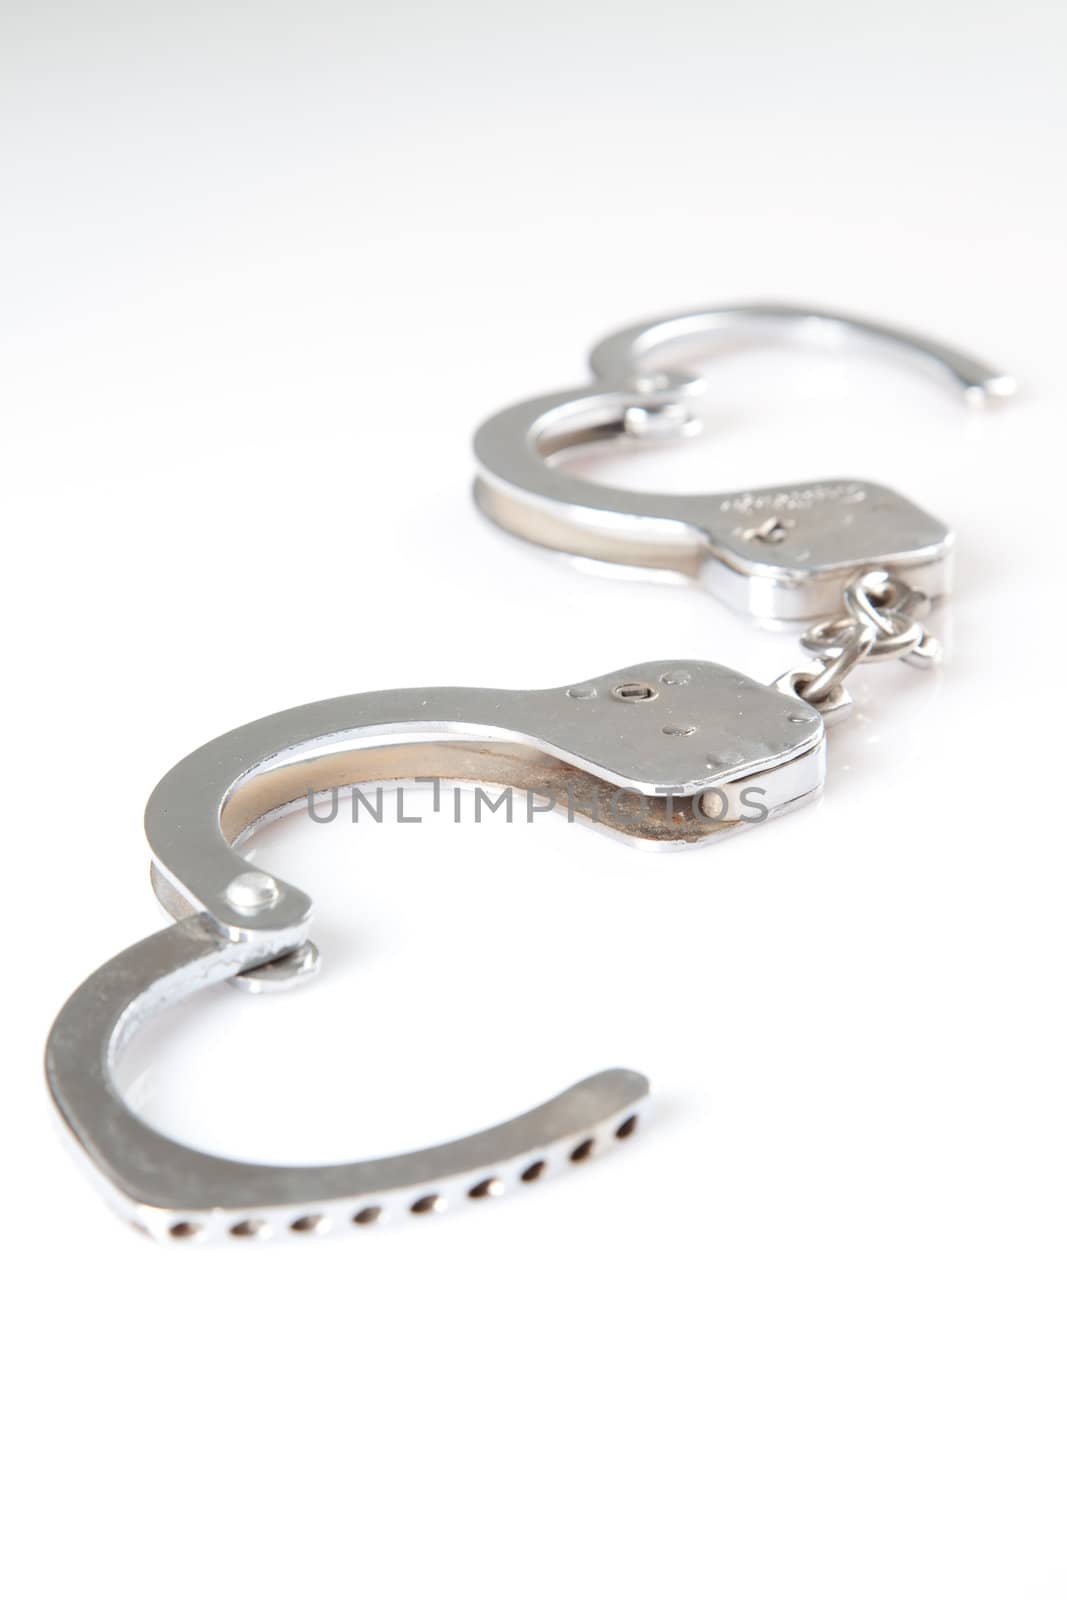 hand cuffs by haiderazim